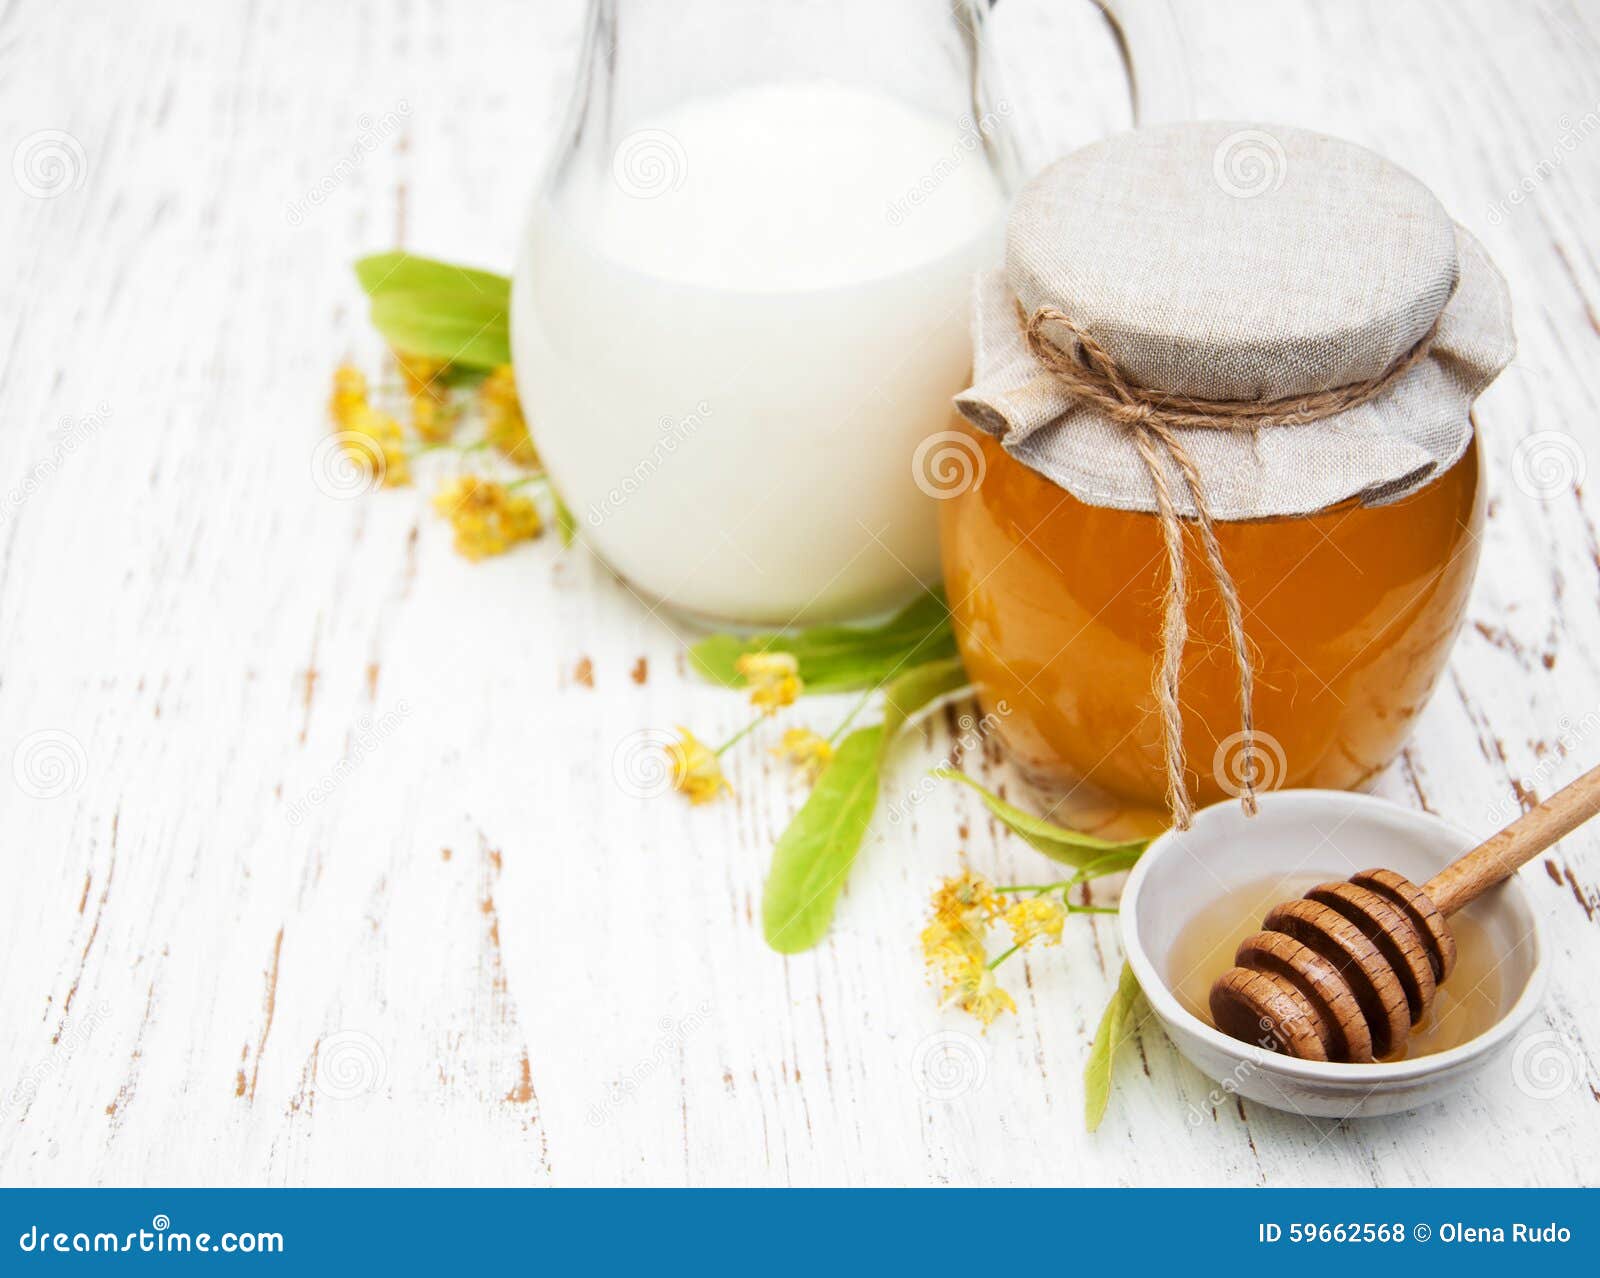 温暖的牛奶用香料和蜂蜜 库存图片. 图片 包括有 温暖, 甜甜, 饮料, 牛奶, 丁香, 蜂蜜, 糖浆, 匙子 - 30579337